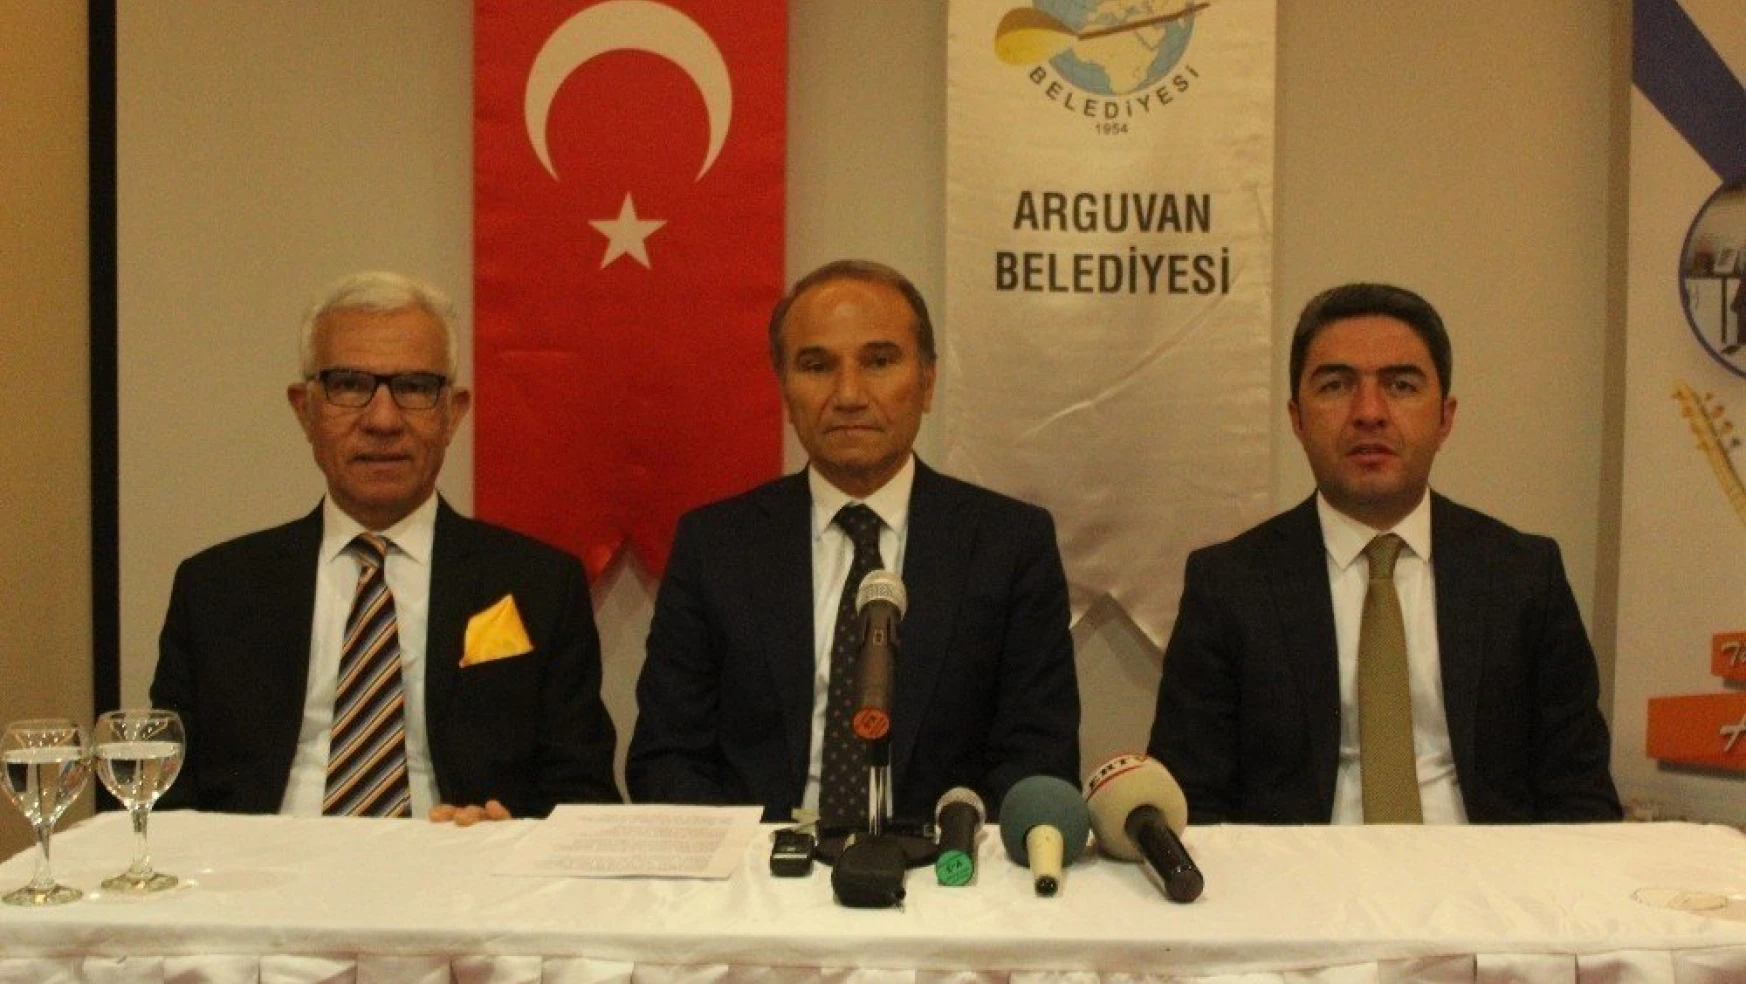 13. Uluslararası Arguvan Türkü Festivali 28-29 Temmuz'da düzenlenecek
